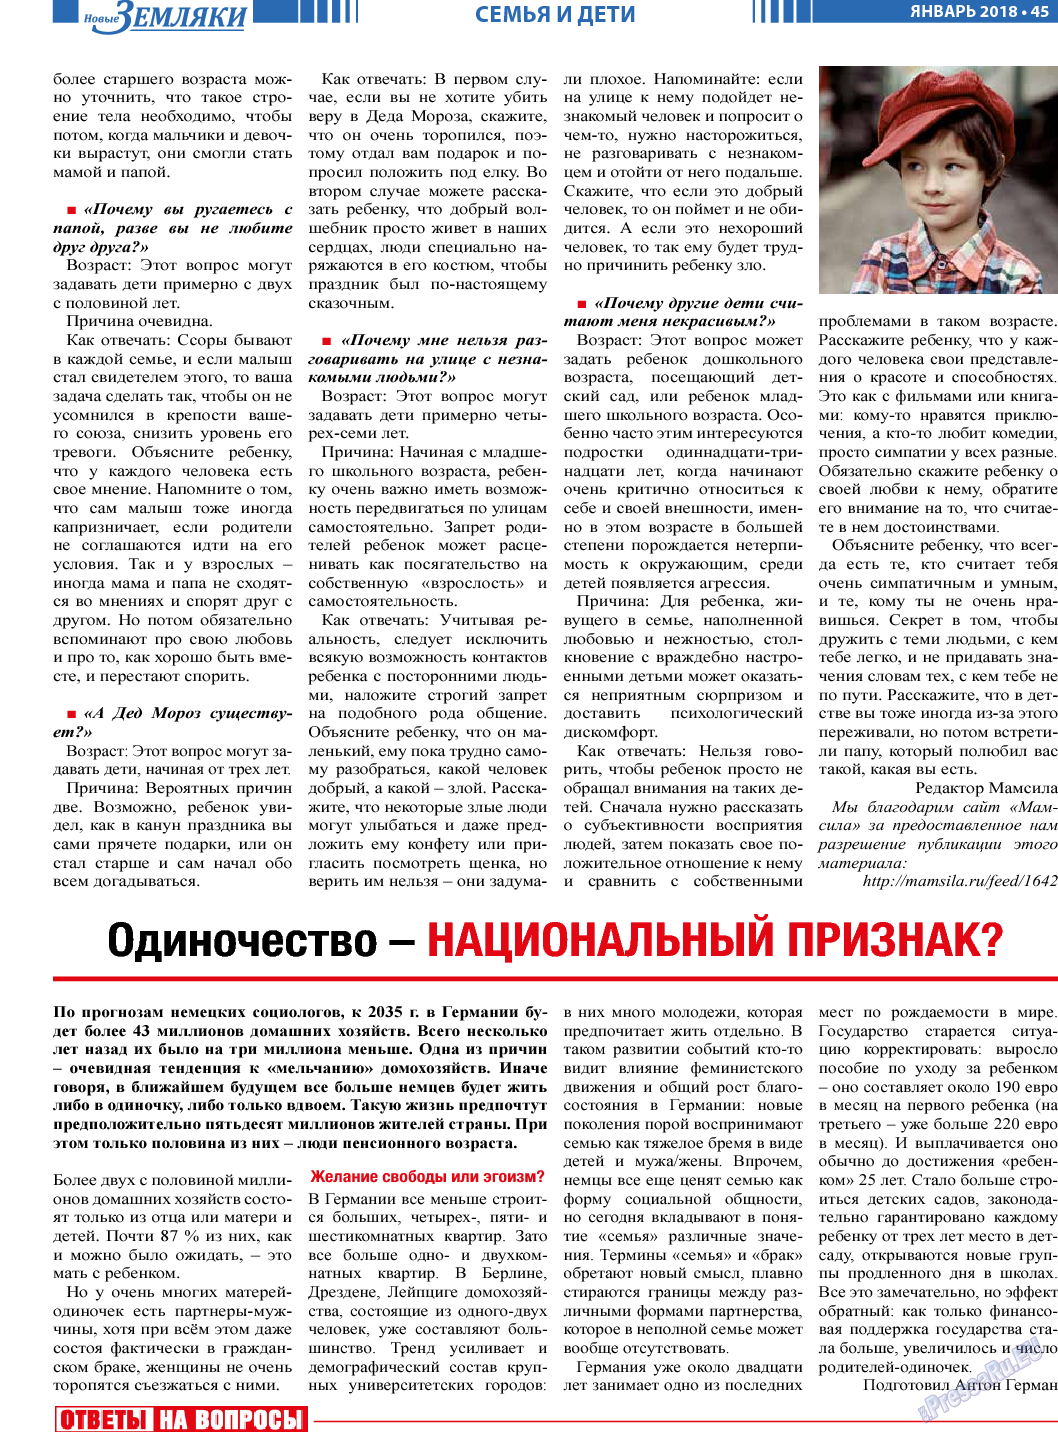 Новые Земляки, газета. 2018 №1 стр.45